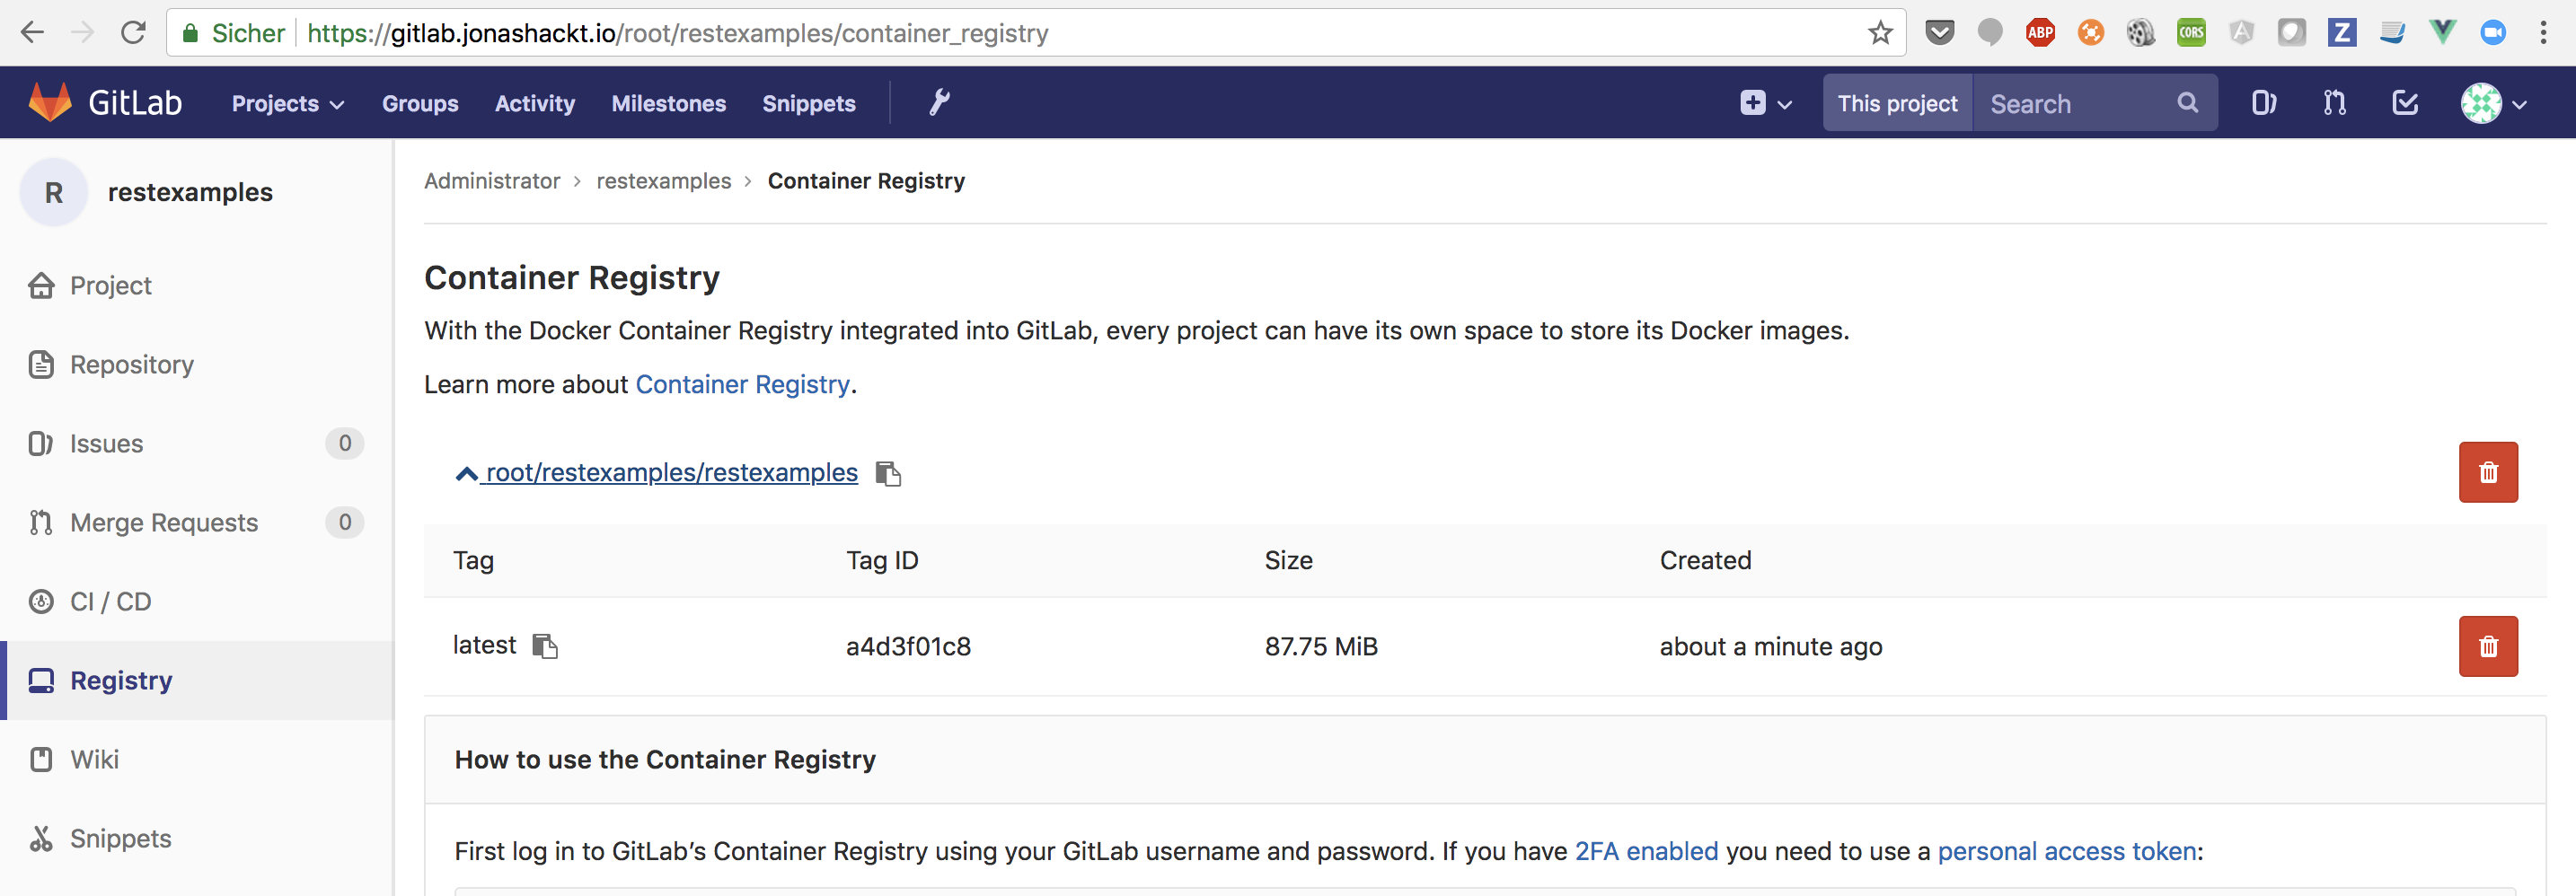 gitlab-registry-overview.png